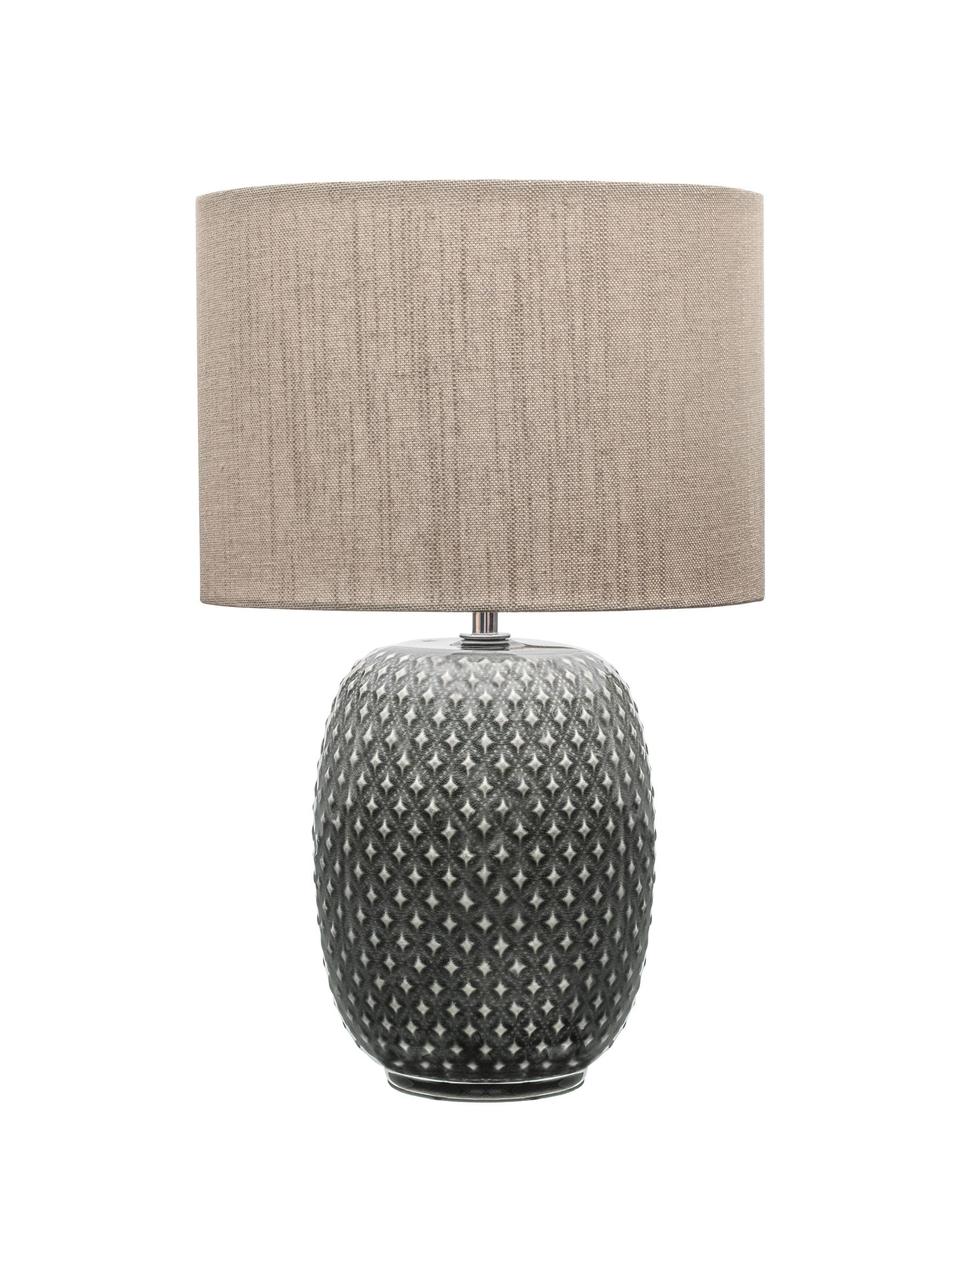 Lámpara de noche de cerámica Pretty Classy, Pantalla: tela, Cable: cubierto en tela, Gris, beige, Ø 25 x Al 40 cm